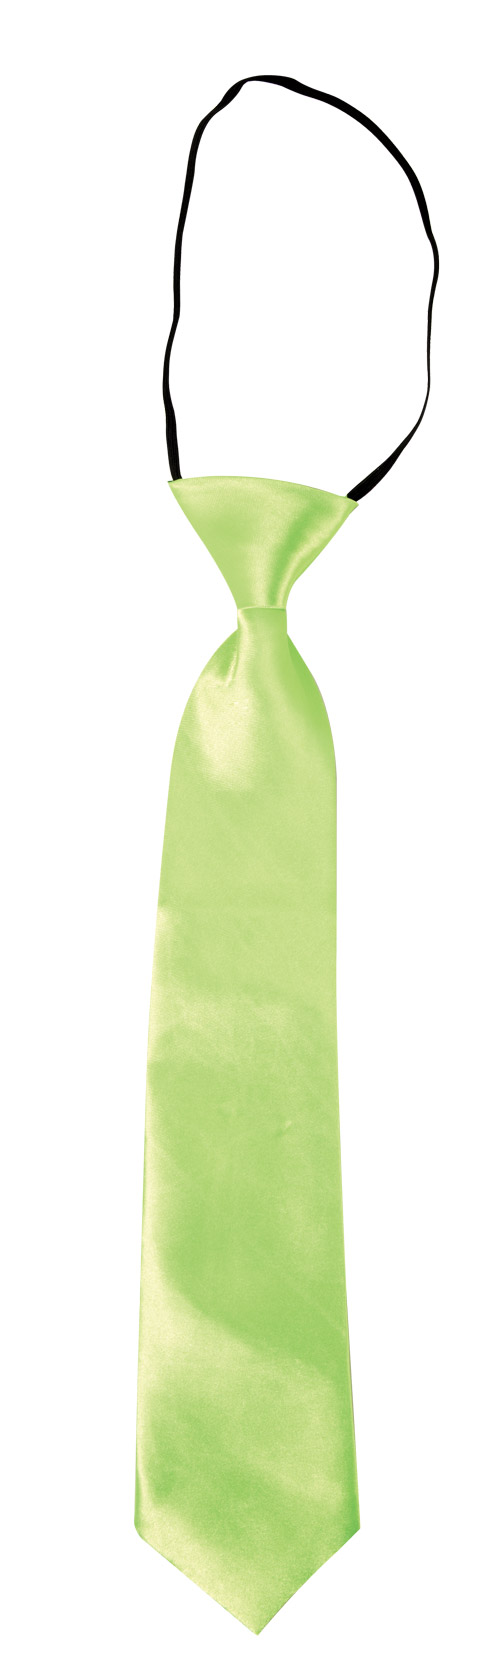 Cravate avec élastique Adulte Vert Fluo